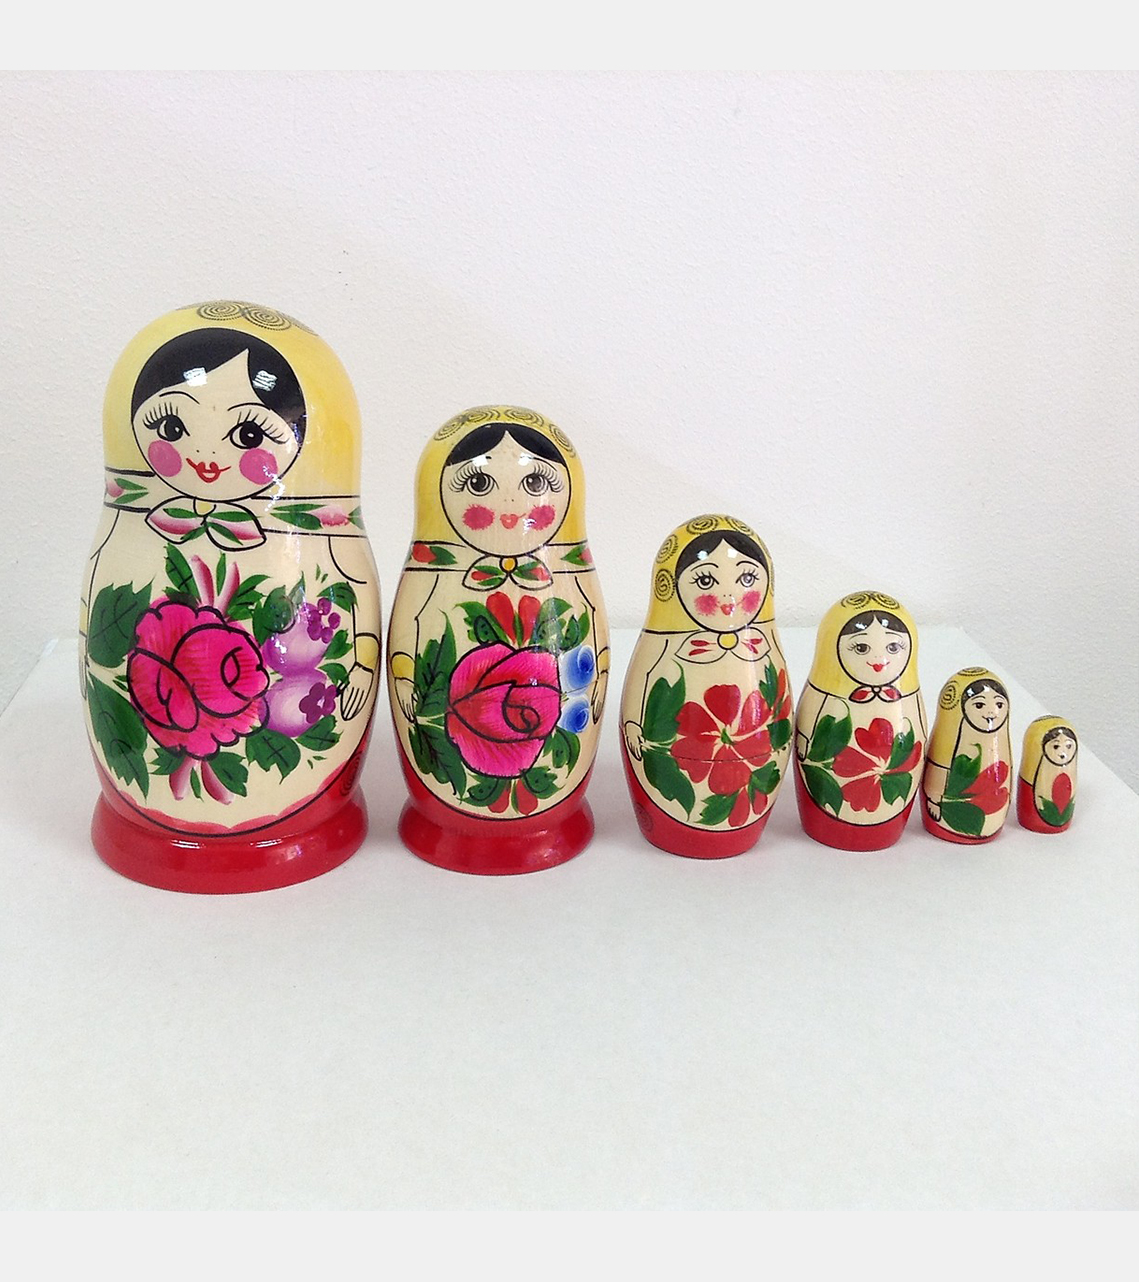 фото шесть кукол матрешки матрёшки золотая хохлома хохломская роспись